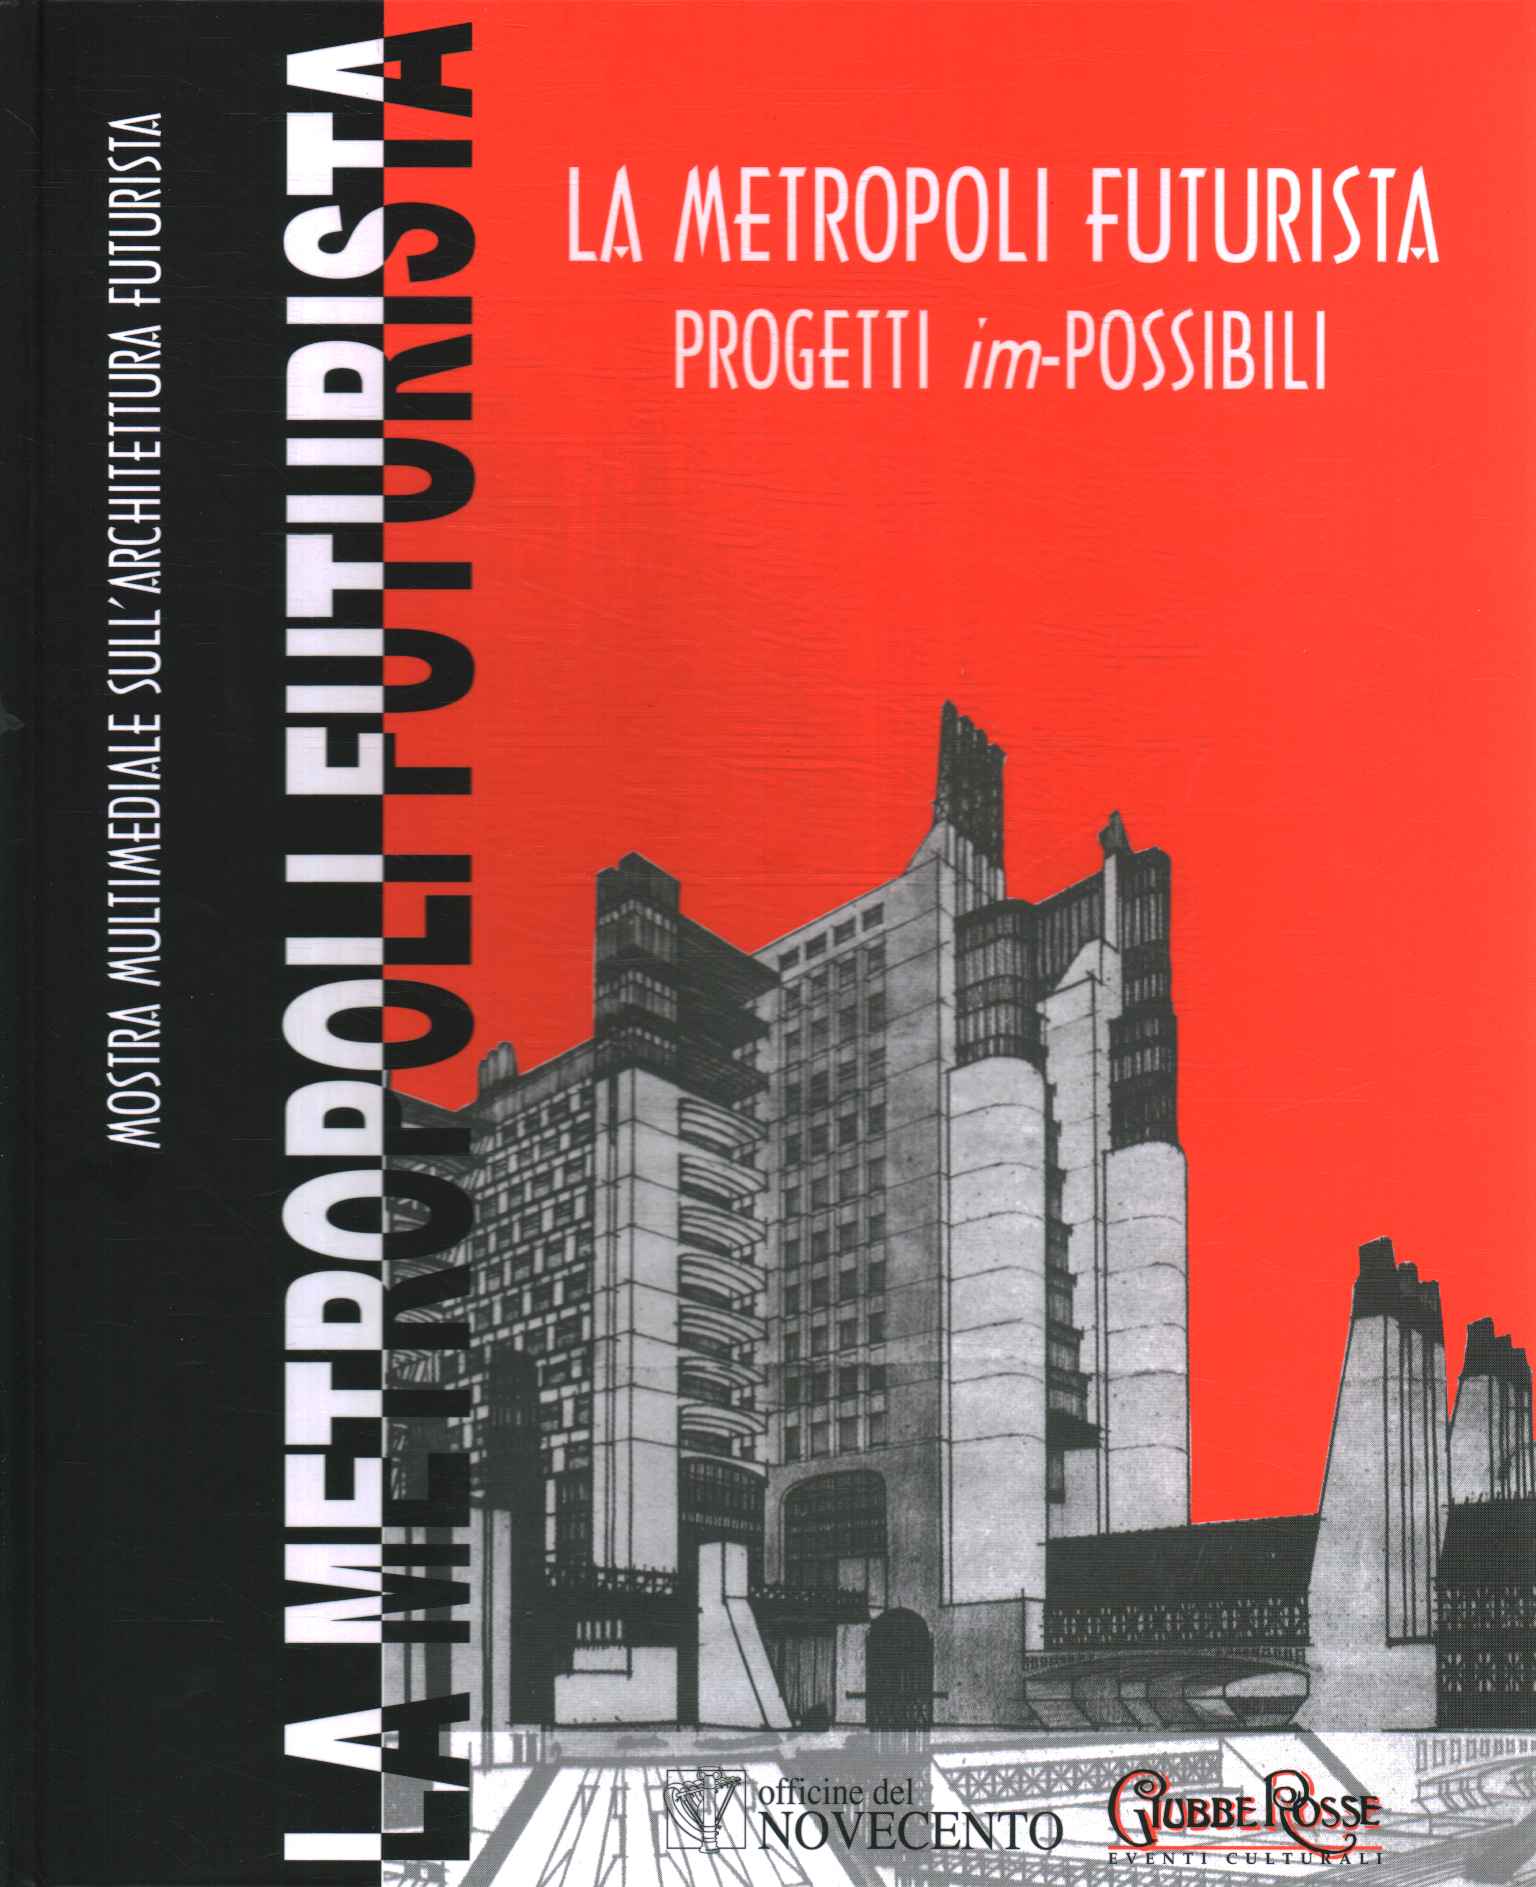 Die futuristische Metropole. Projekte im-möglich